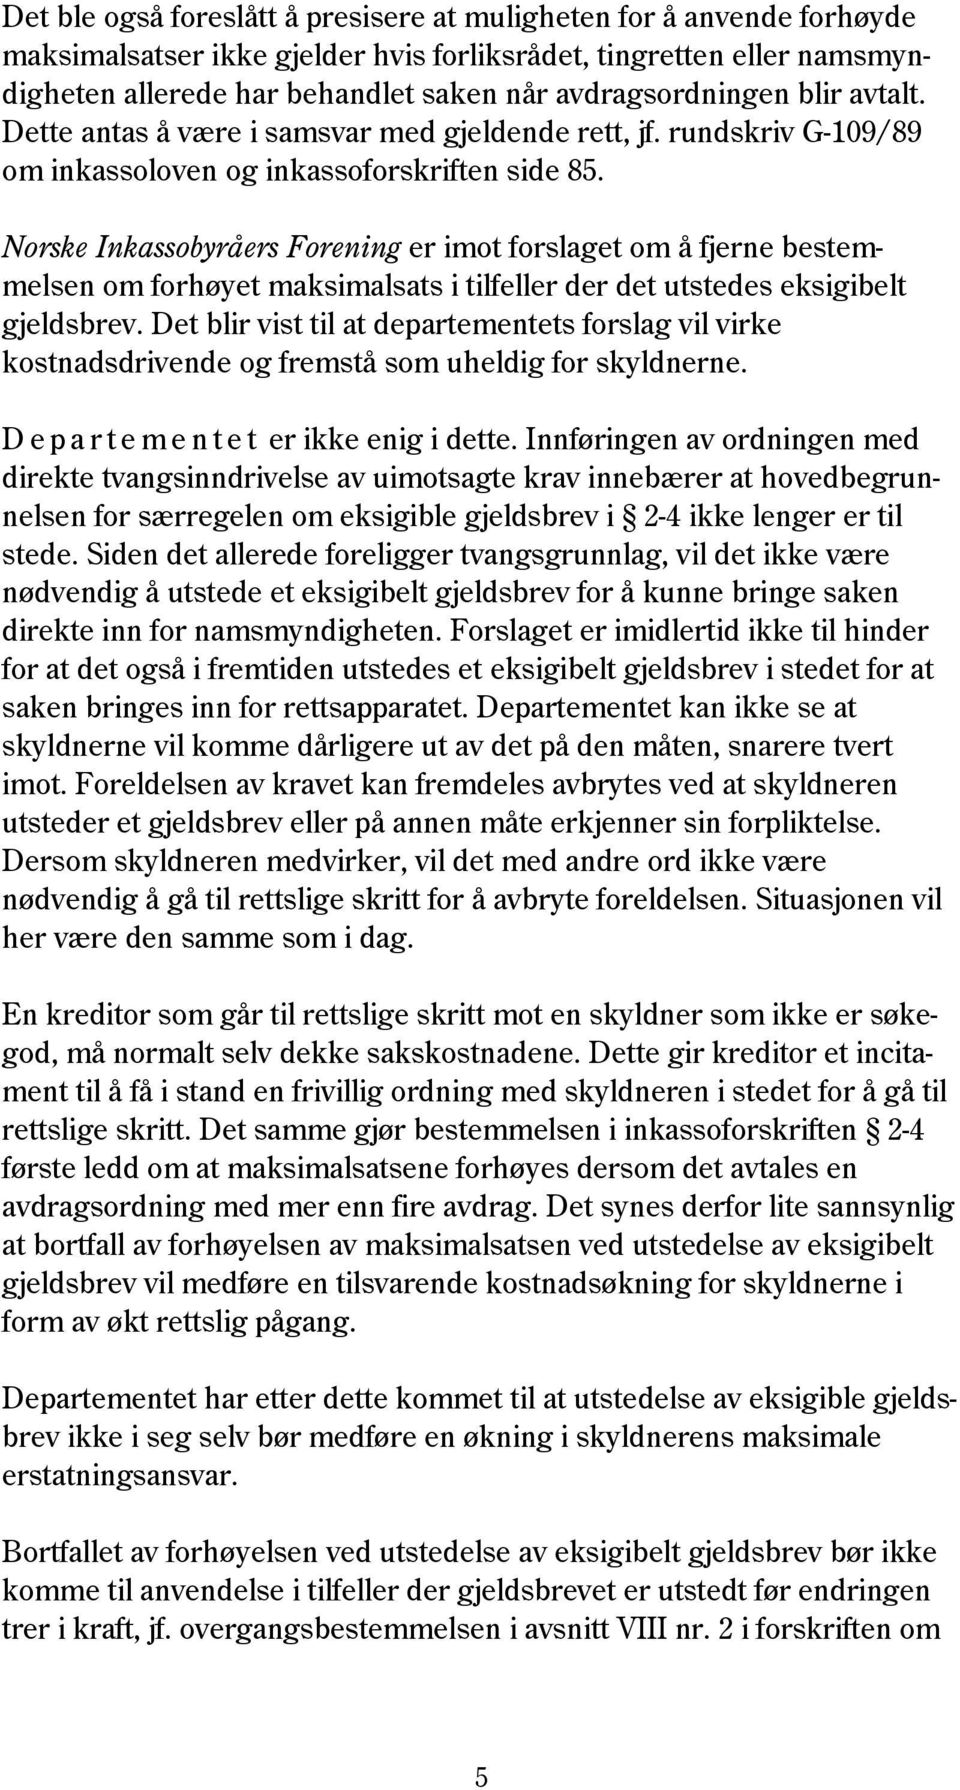 Norske Inkassobyråers Forening er imot forslaget om å fjerne bestemmelsen om forhøyet maksimalsats i tilfeller der det utstedes eksigibelt gjeldsbrev.